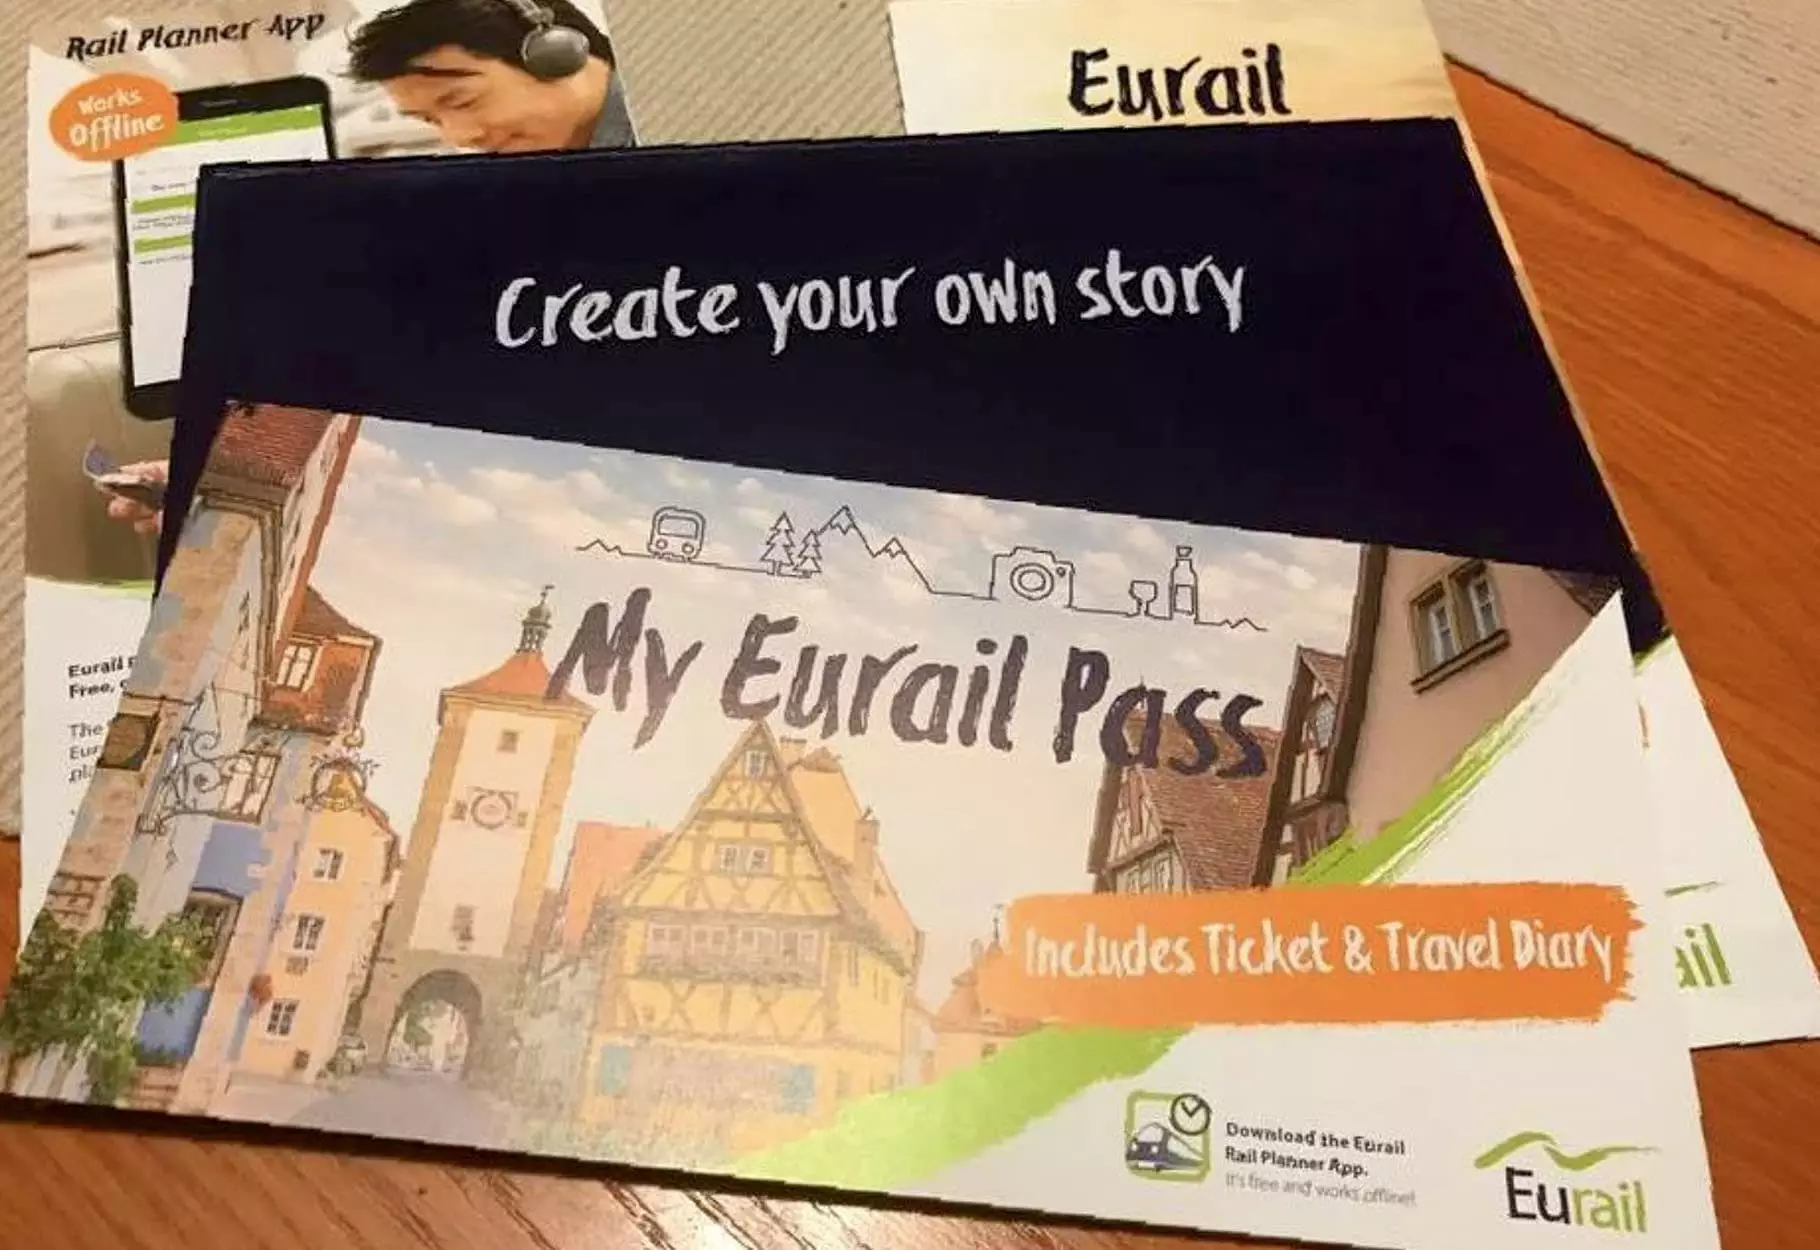 euro travel pass